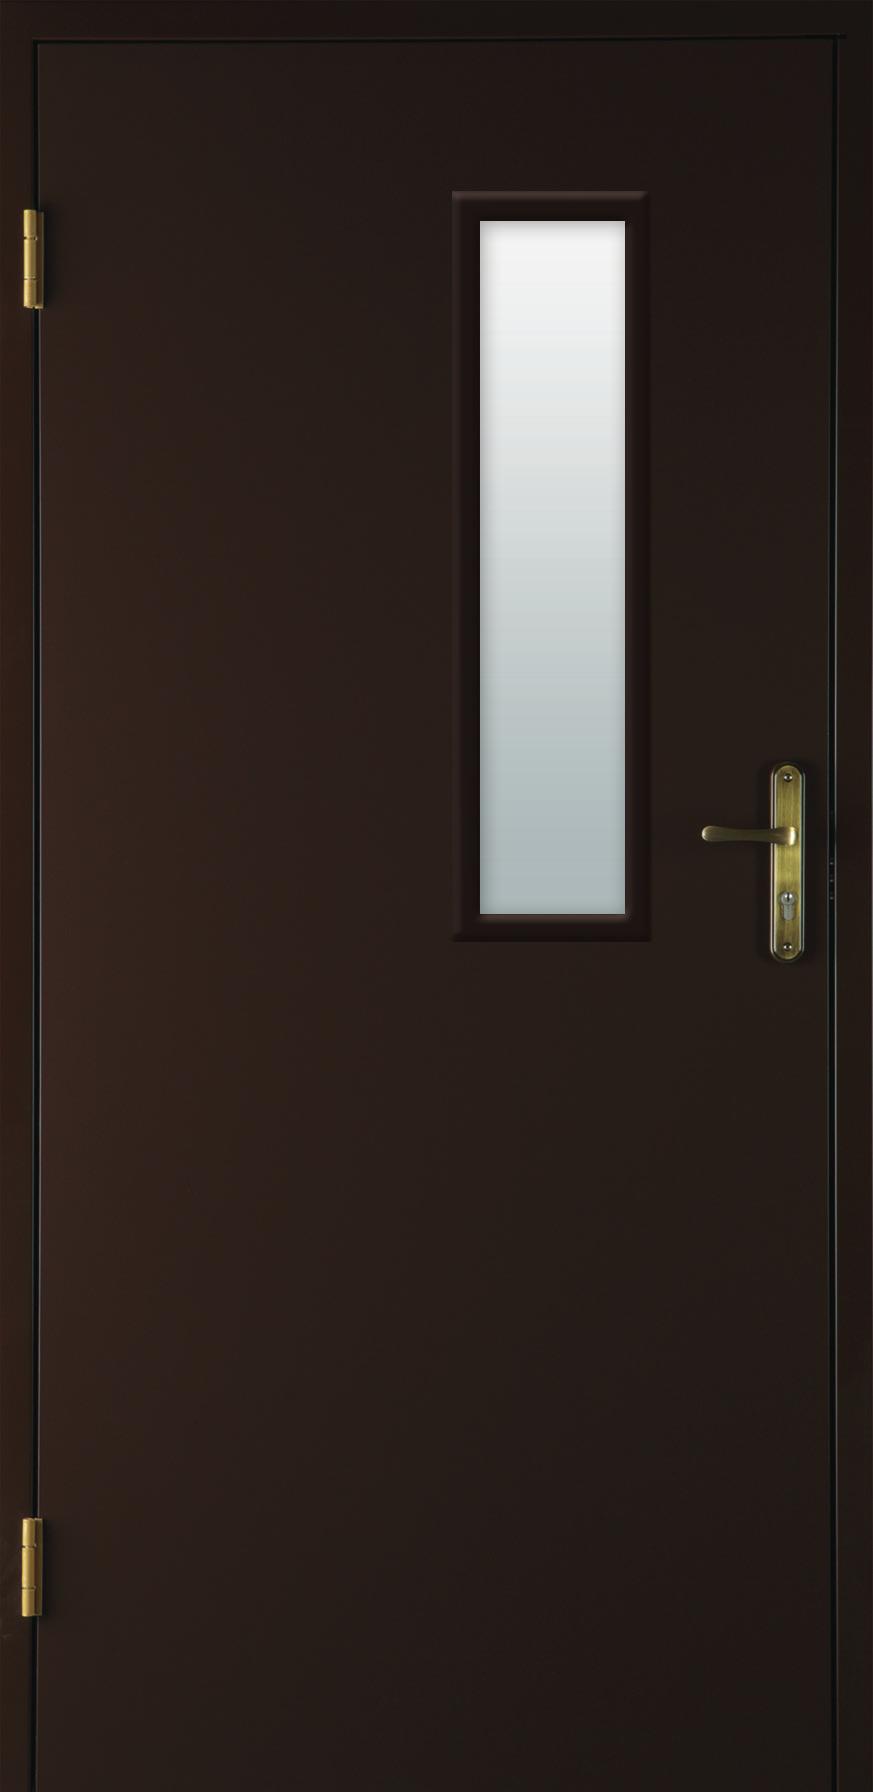 BaSIC (drzwi z ościeżnicą stalową) zastosowanie: W budownictwie mieszkaniowym oraz użyteczności publicznej jako wewnętrzne drzwi wejściowe.